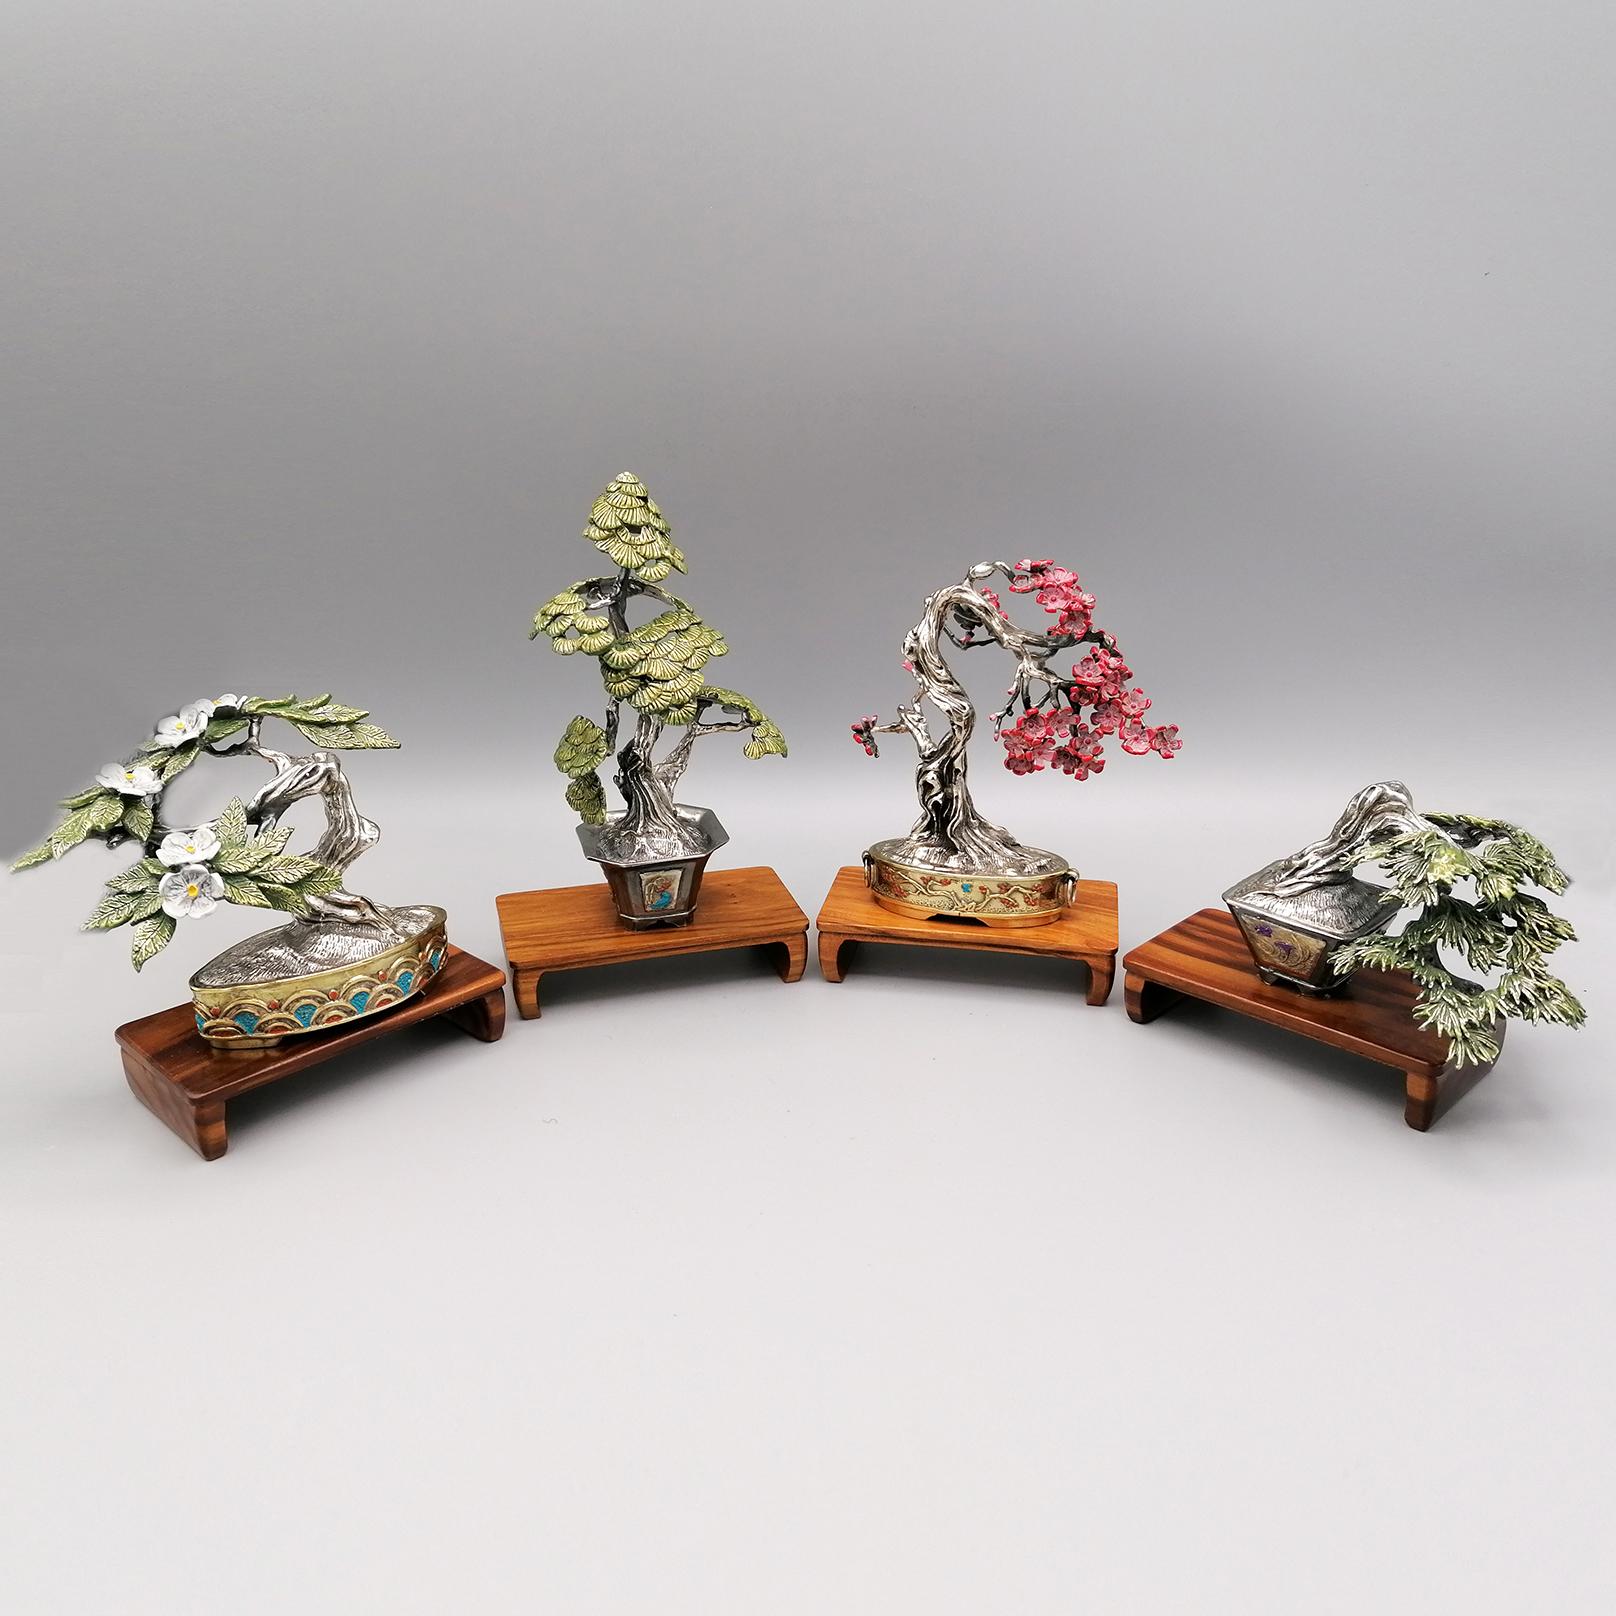 Sammlung von 4 Bonsai-Miniaturen in massivem Silber handgefertigt, vergoldet, emailliert und brüniert

1. Japanische Aprikose Bonsai gr. 220 cm. 6 x 10,5 H. 8,5
holzsockel 5 x 9 H.2 cm.
2. Japanische Weißkiefer gr. 200 cm. 7 x 5 H.